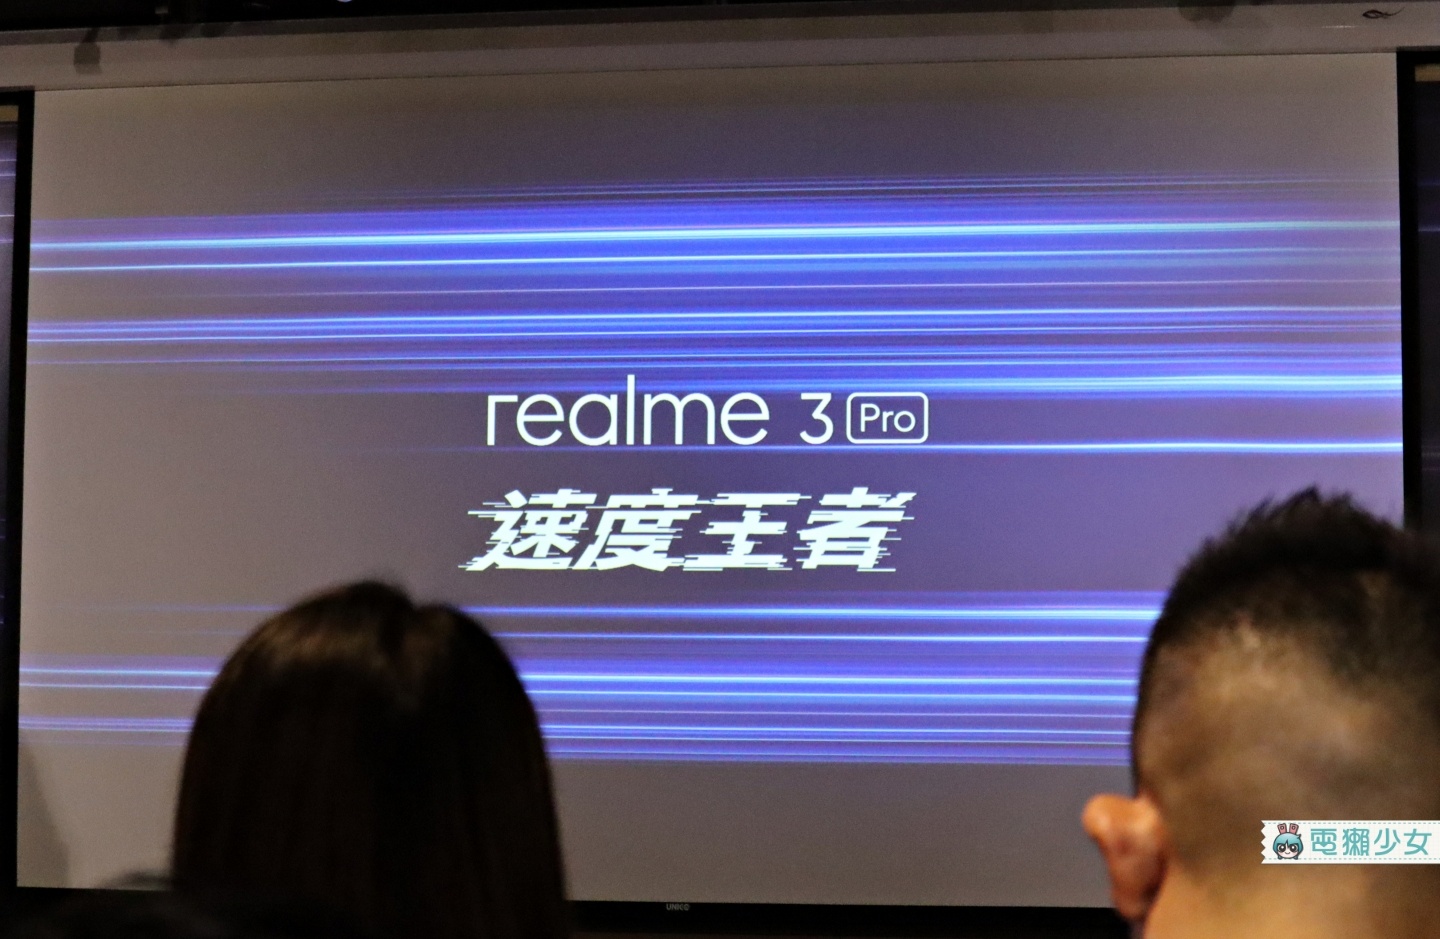 出門｜太佛心！『 realme 3 Pro 』新台幣七千有找！採用S710，還能拍超級夜景和960fps慢動作錄影